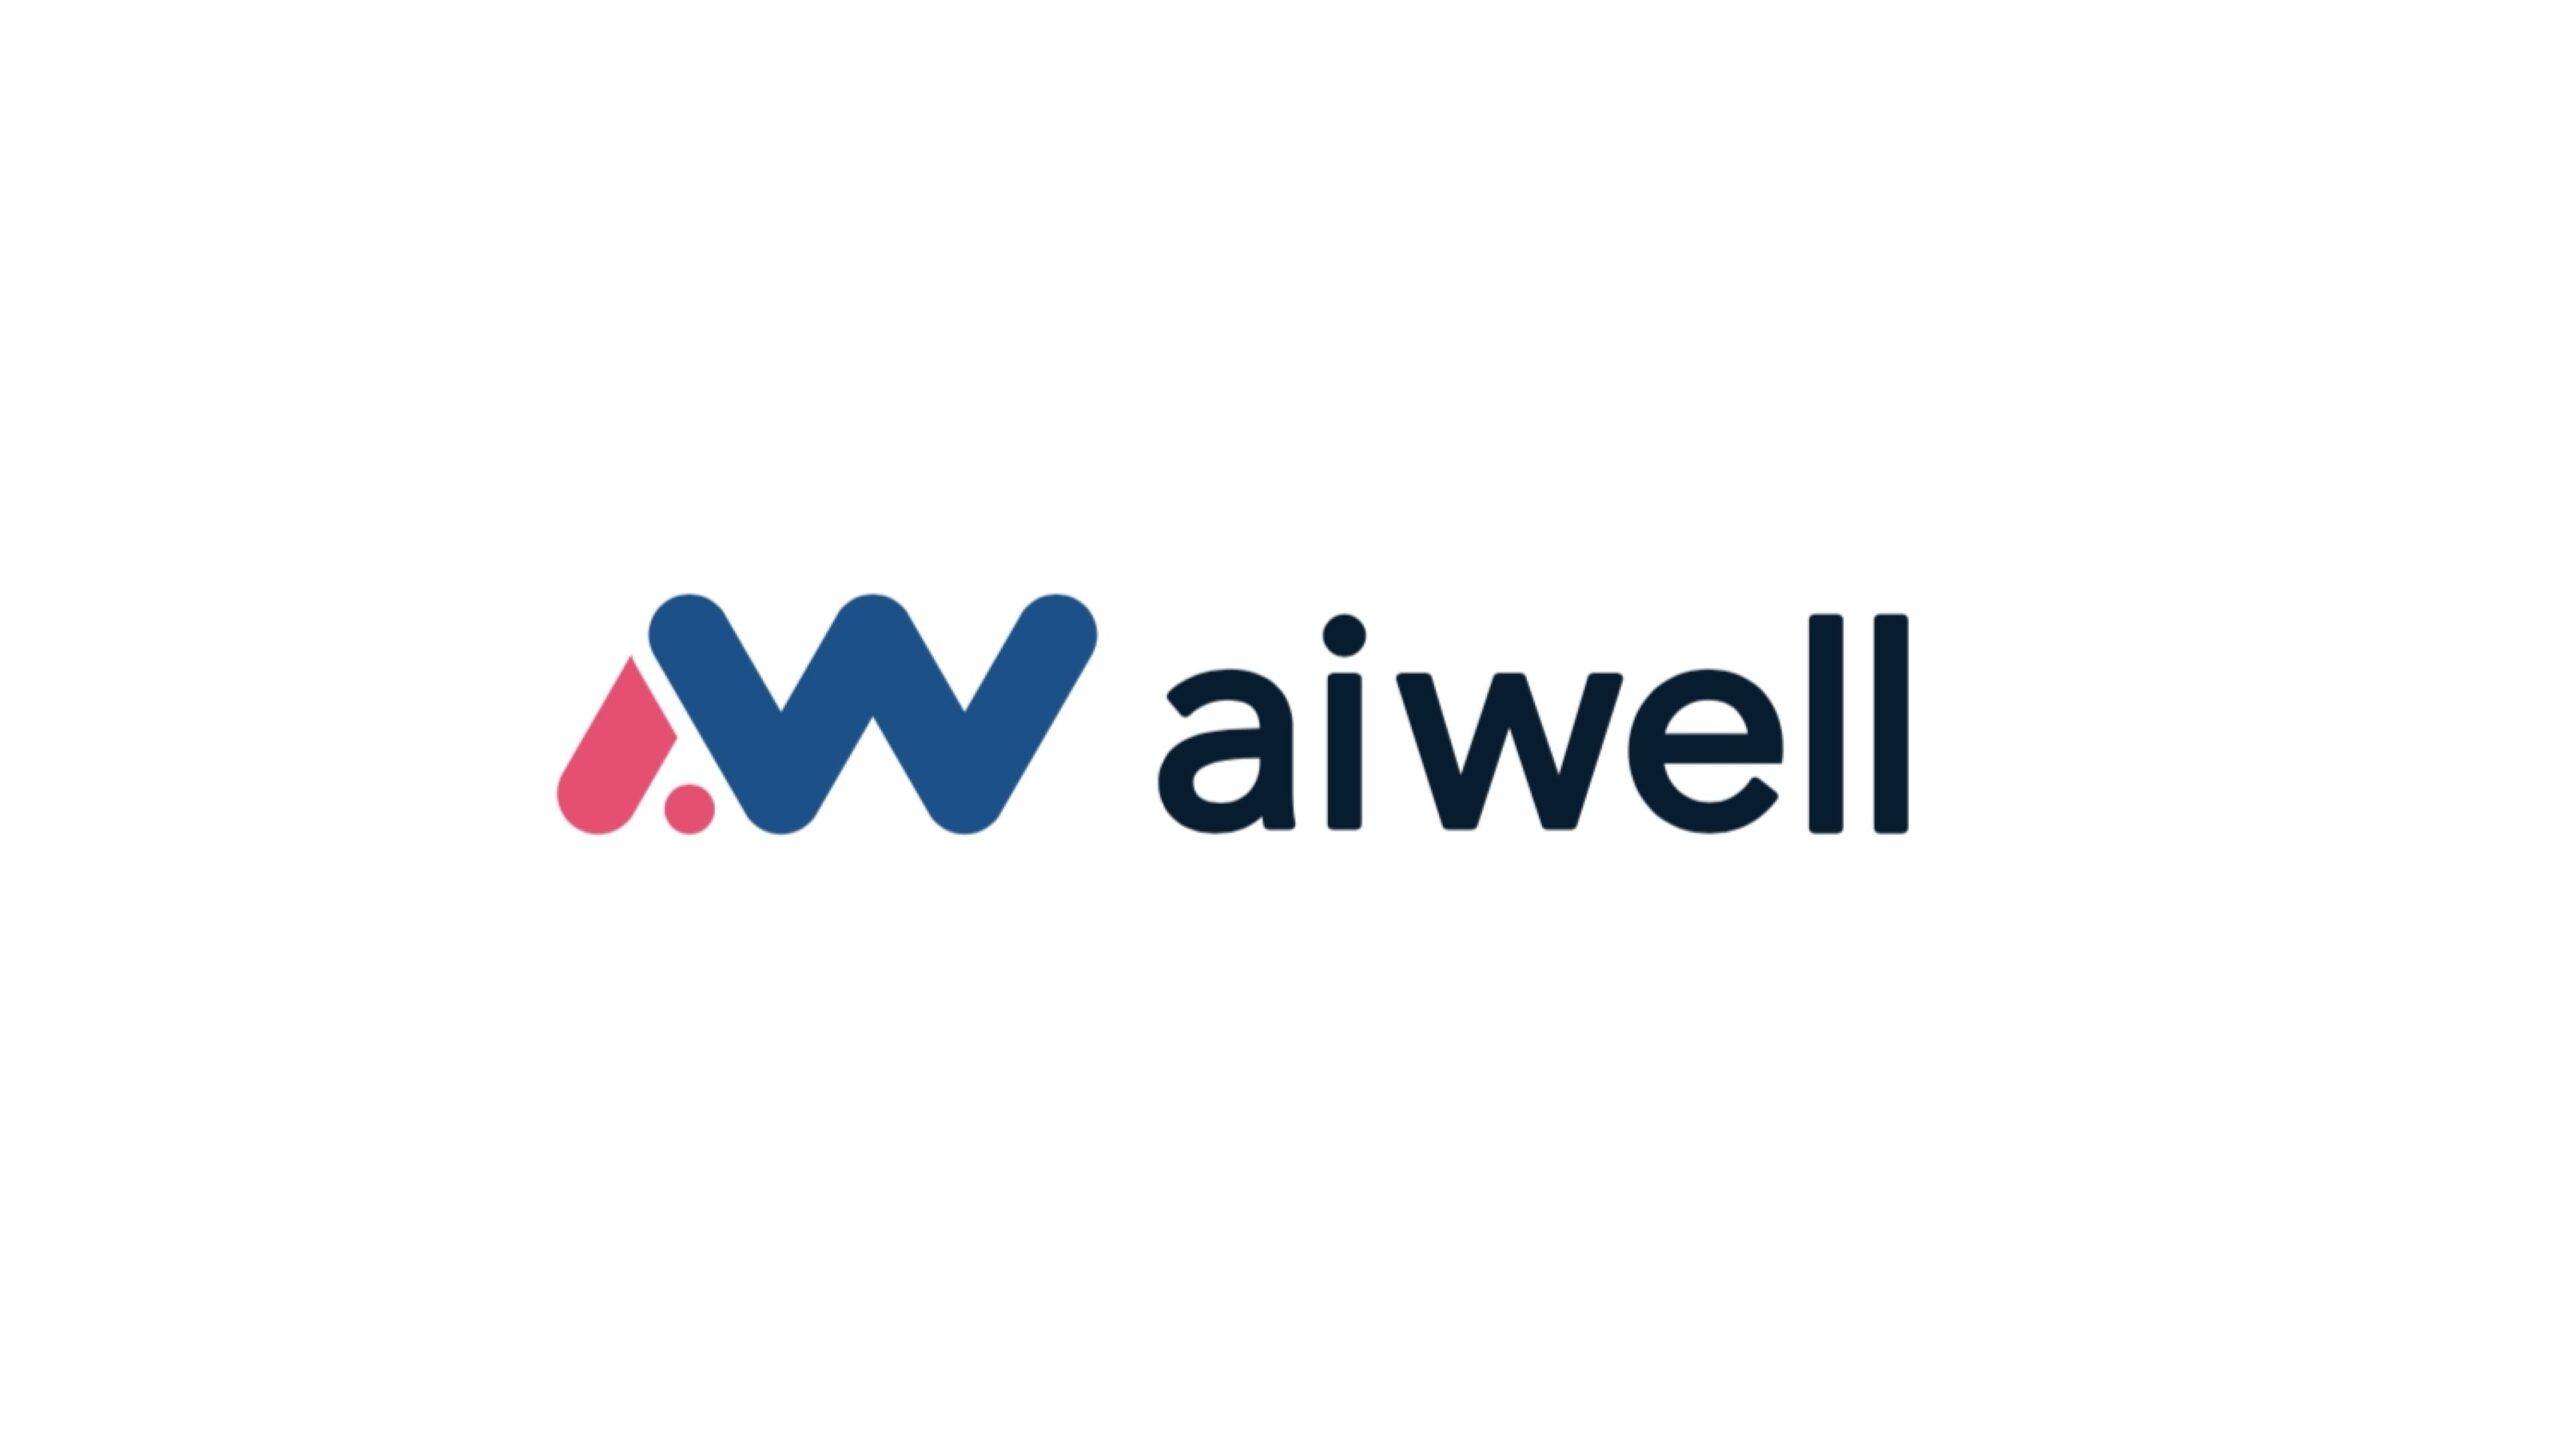 aiwell株式会社、第三者割当増資により資金調達を実施